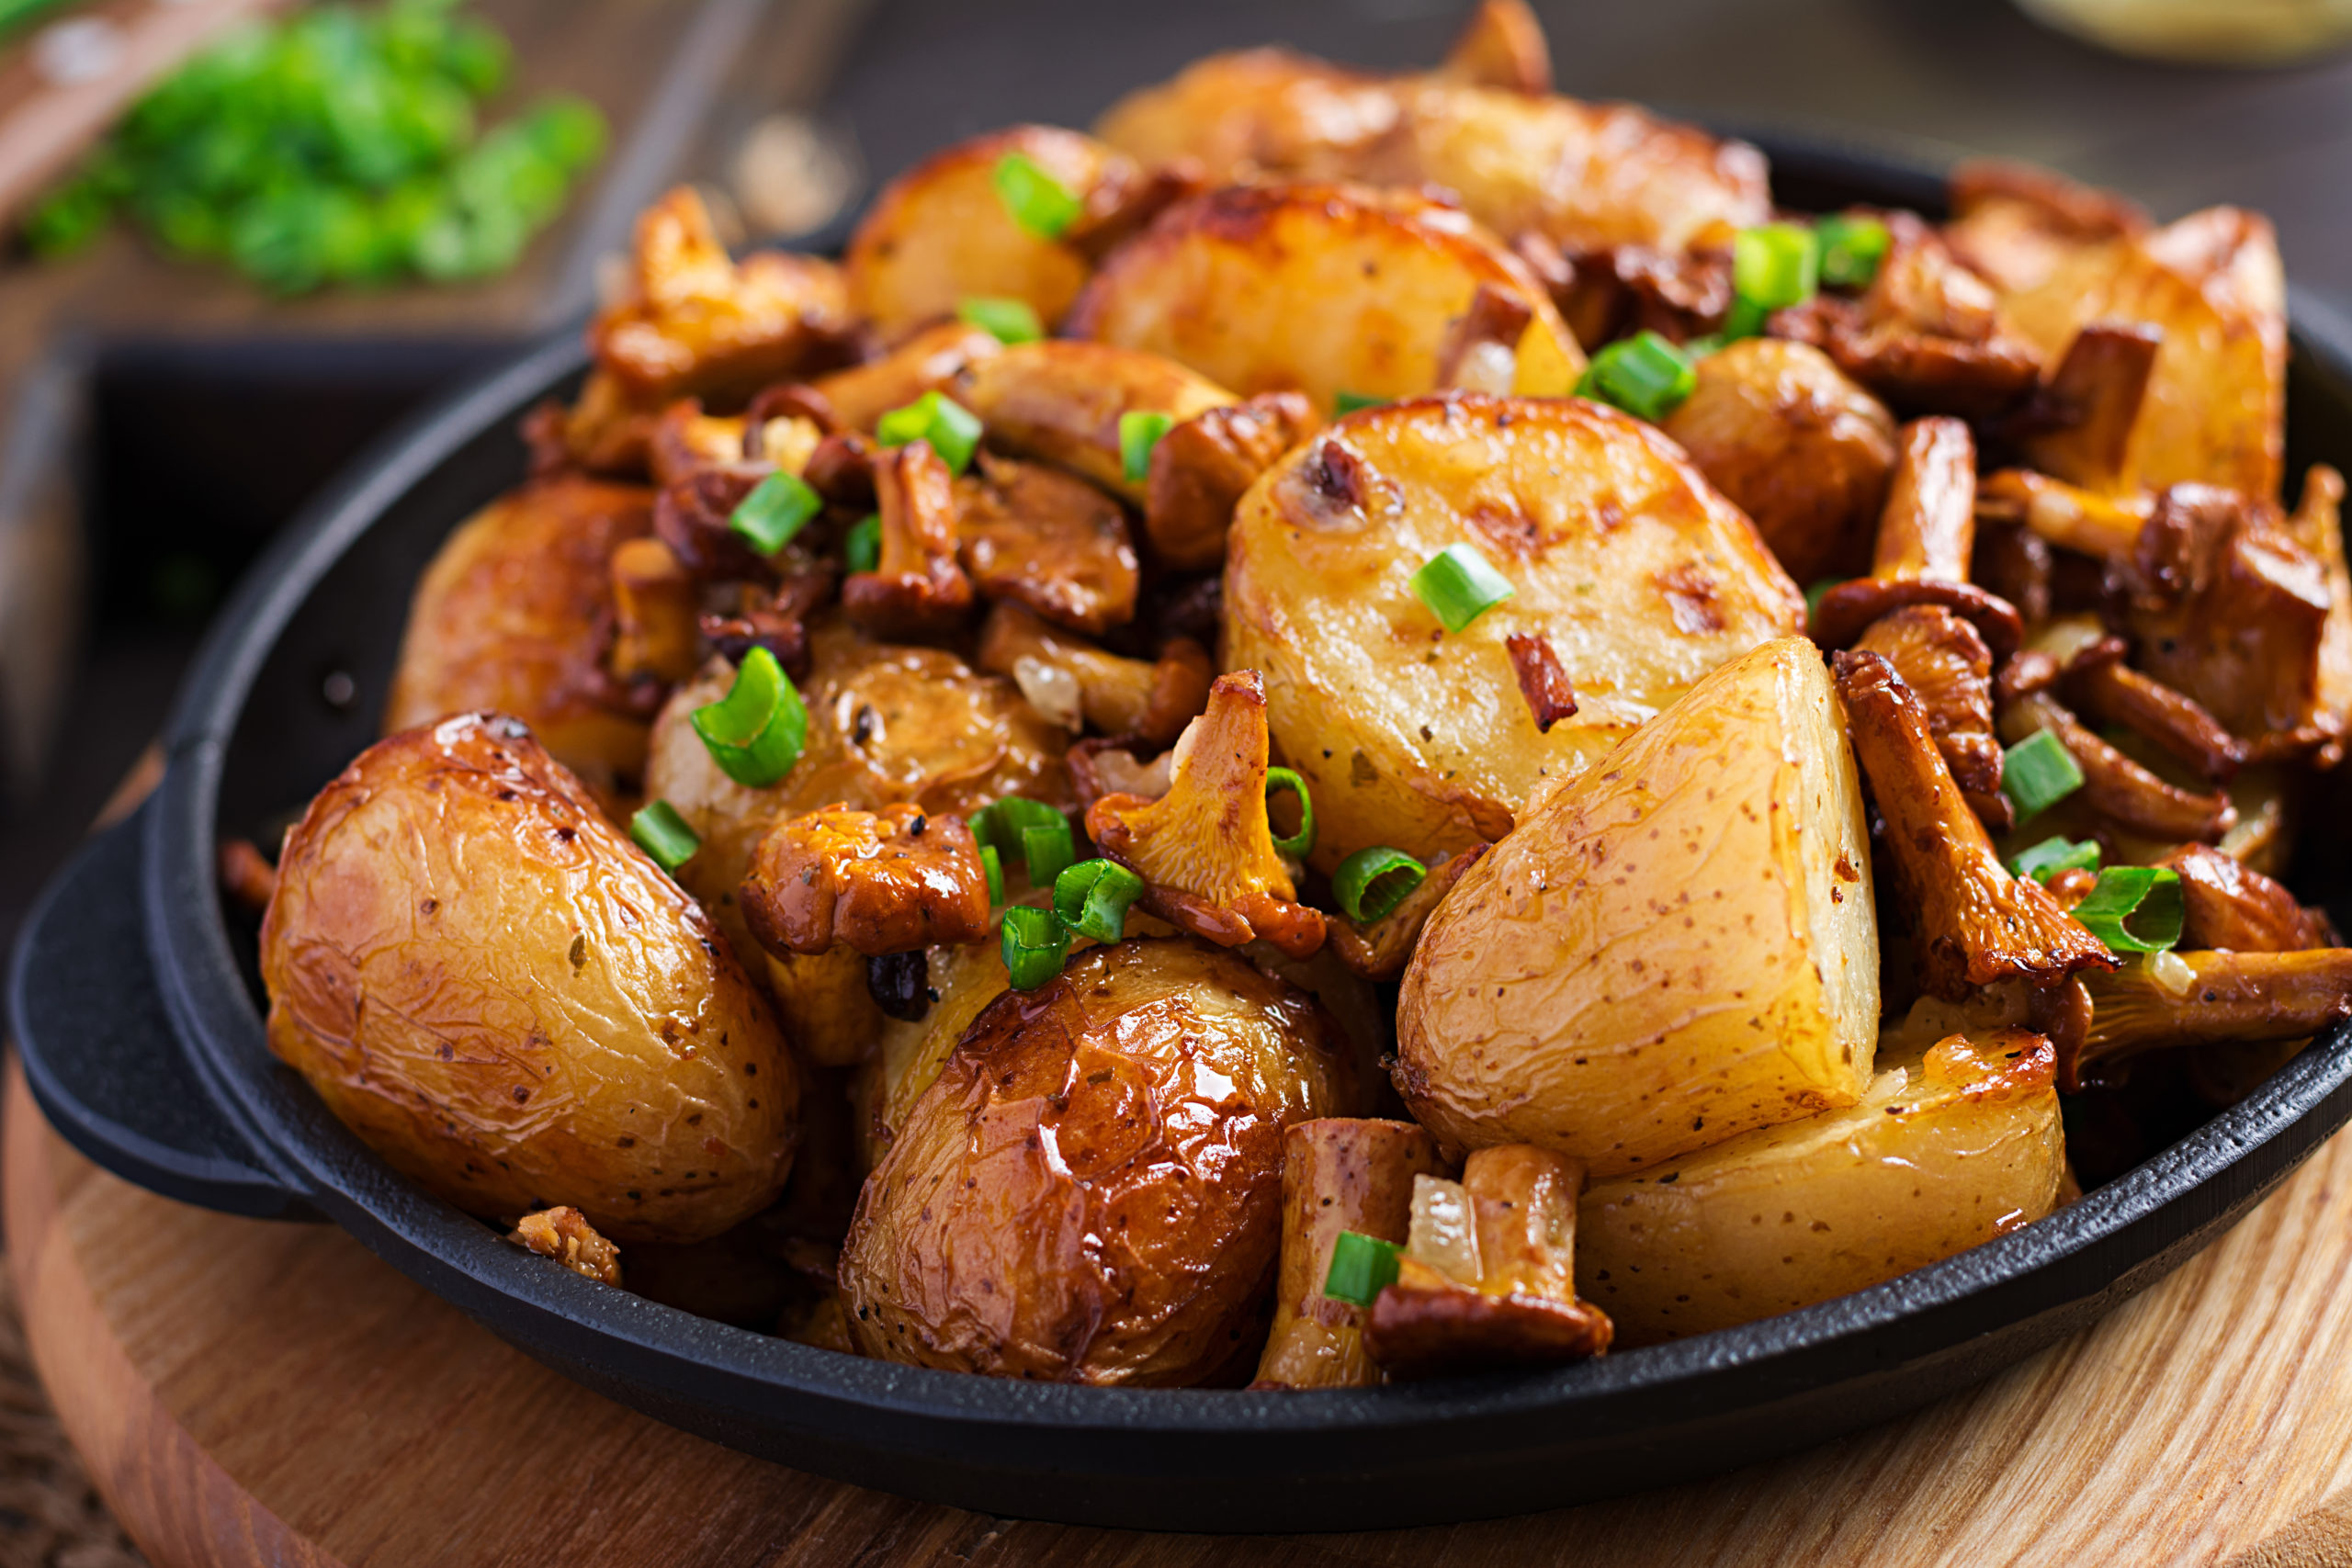 How to Cook Mini Potatoes...